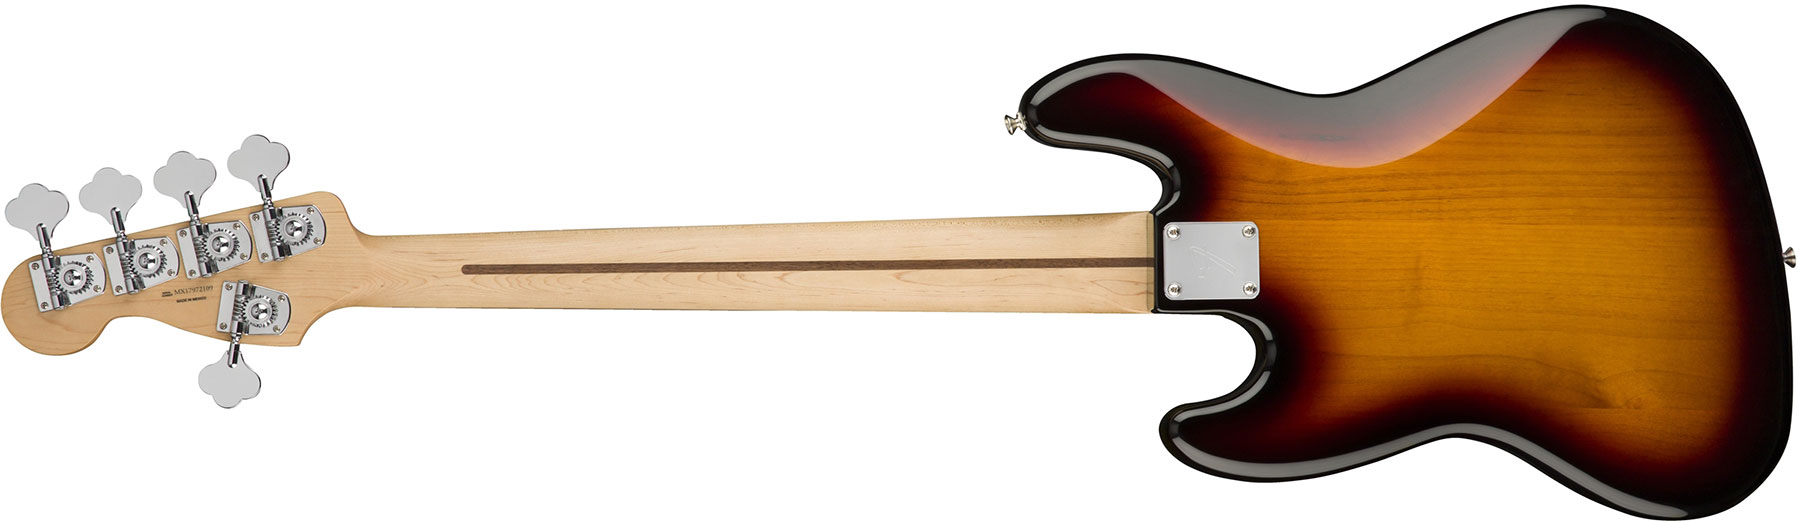 Fender Jazz Bass Player V 5-cordes Mex Pf - 3-color Sunburst - Bajo eléctrico de cuerpo sólido - Variation 1